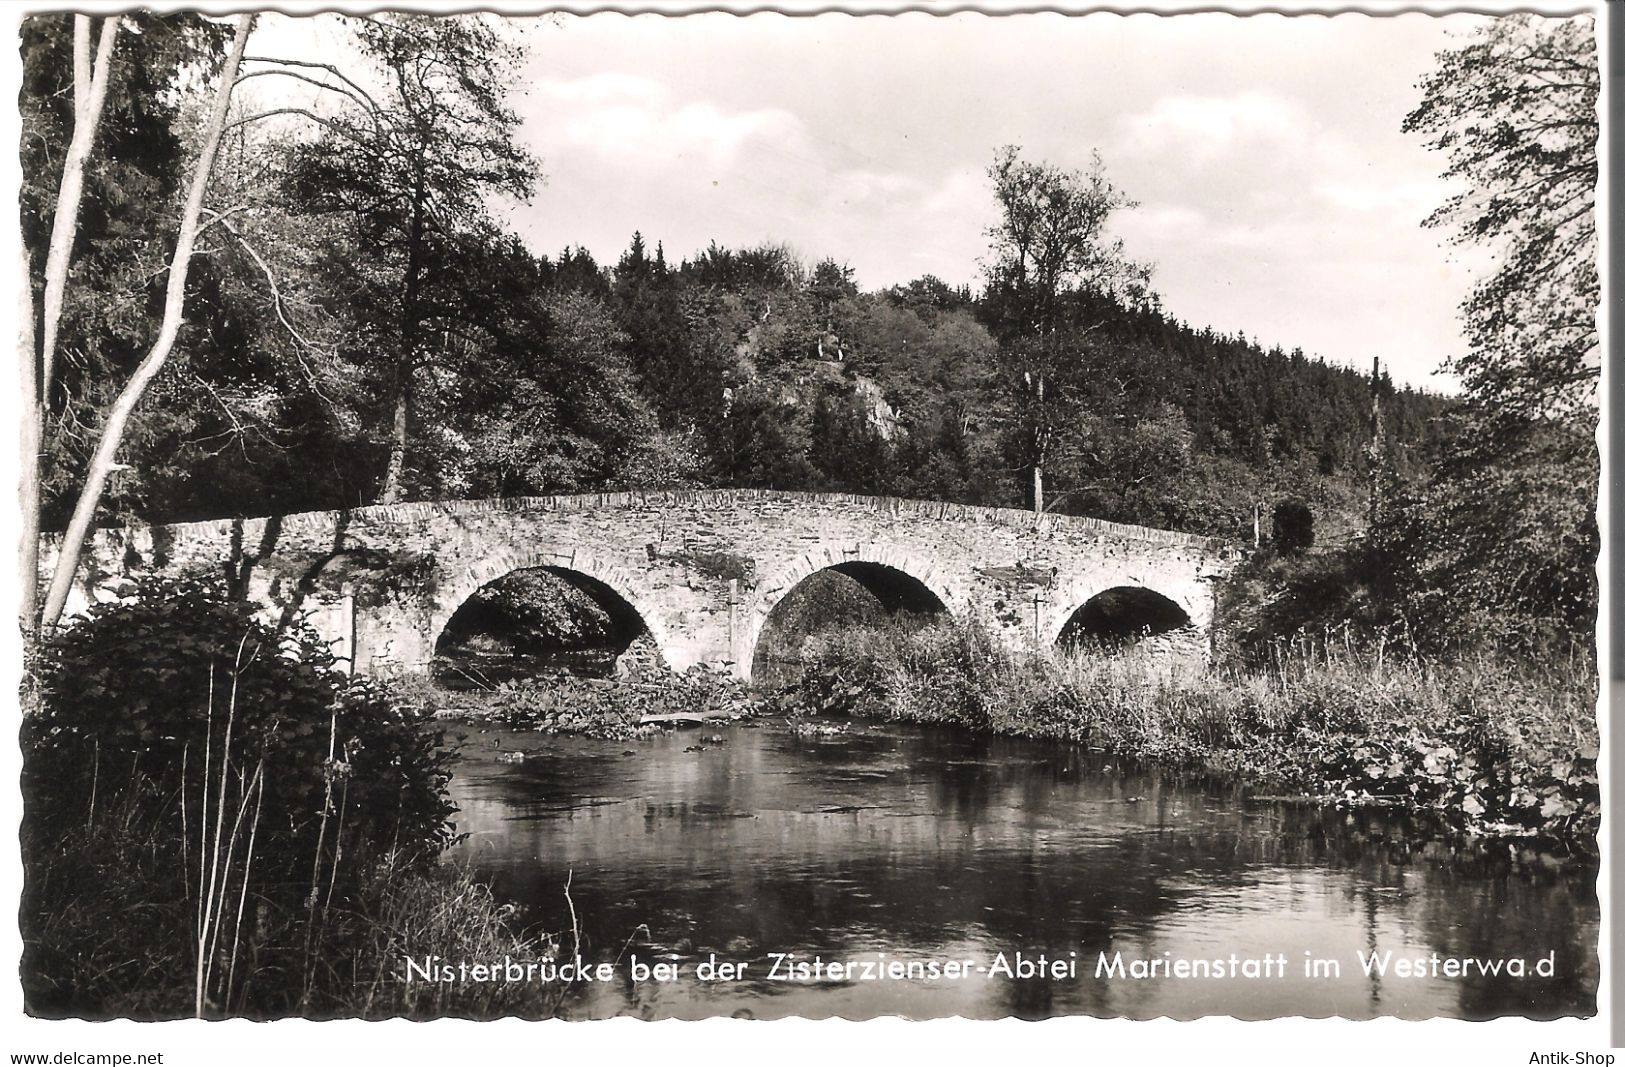 Nisterbrücke Bei Der Zisterzienster-Abtei Marienstatt Im Westerwald V. 1961 (53619) - Hachenburg